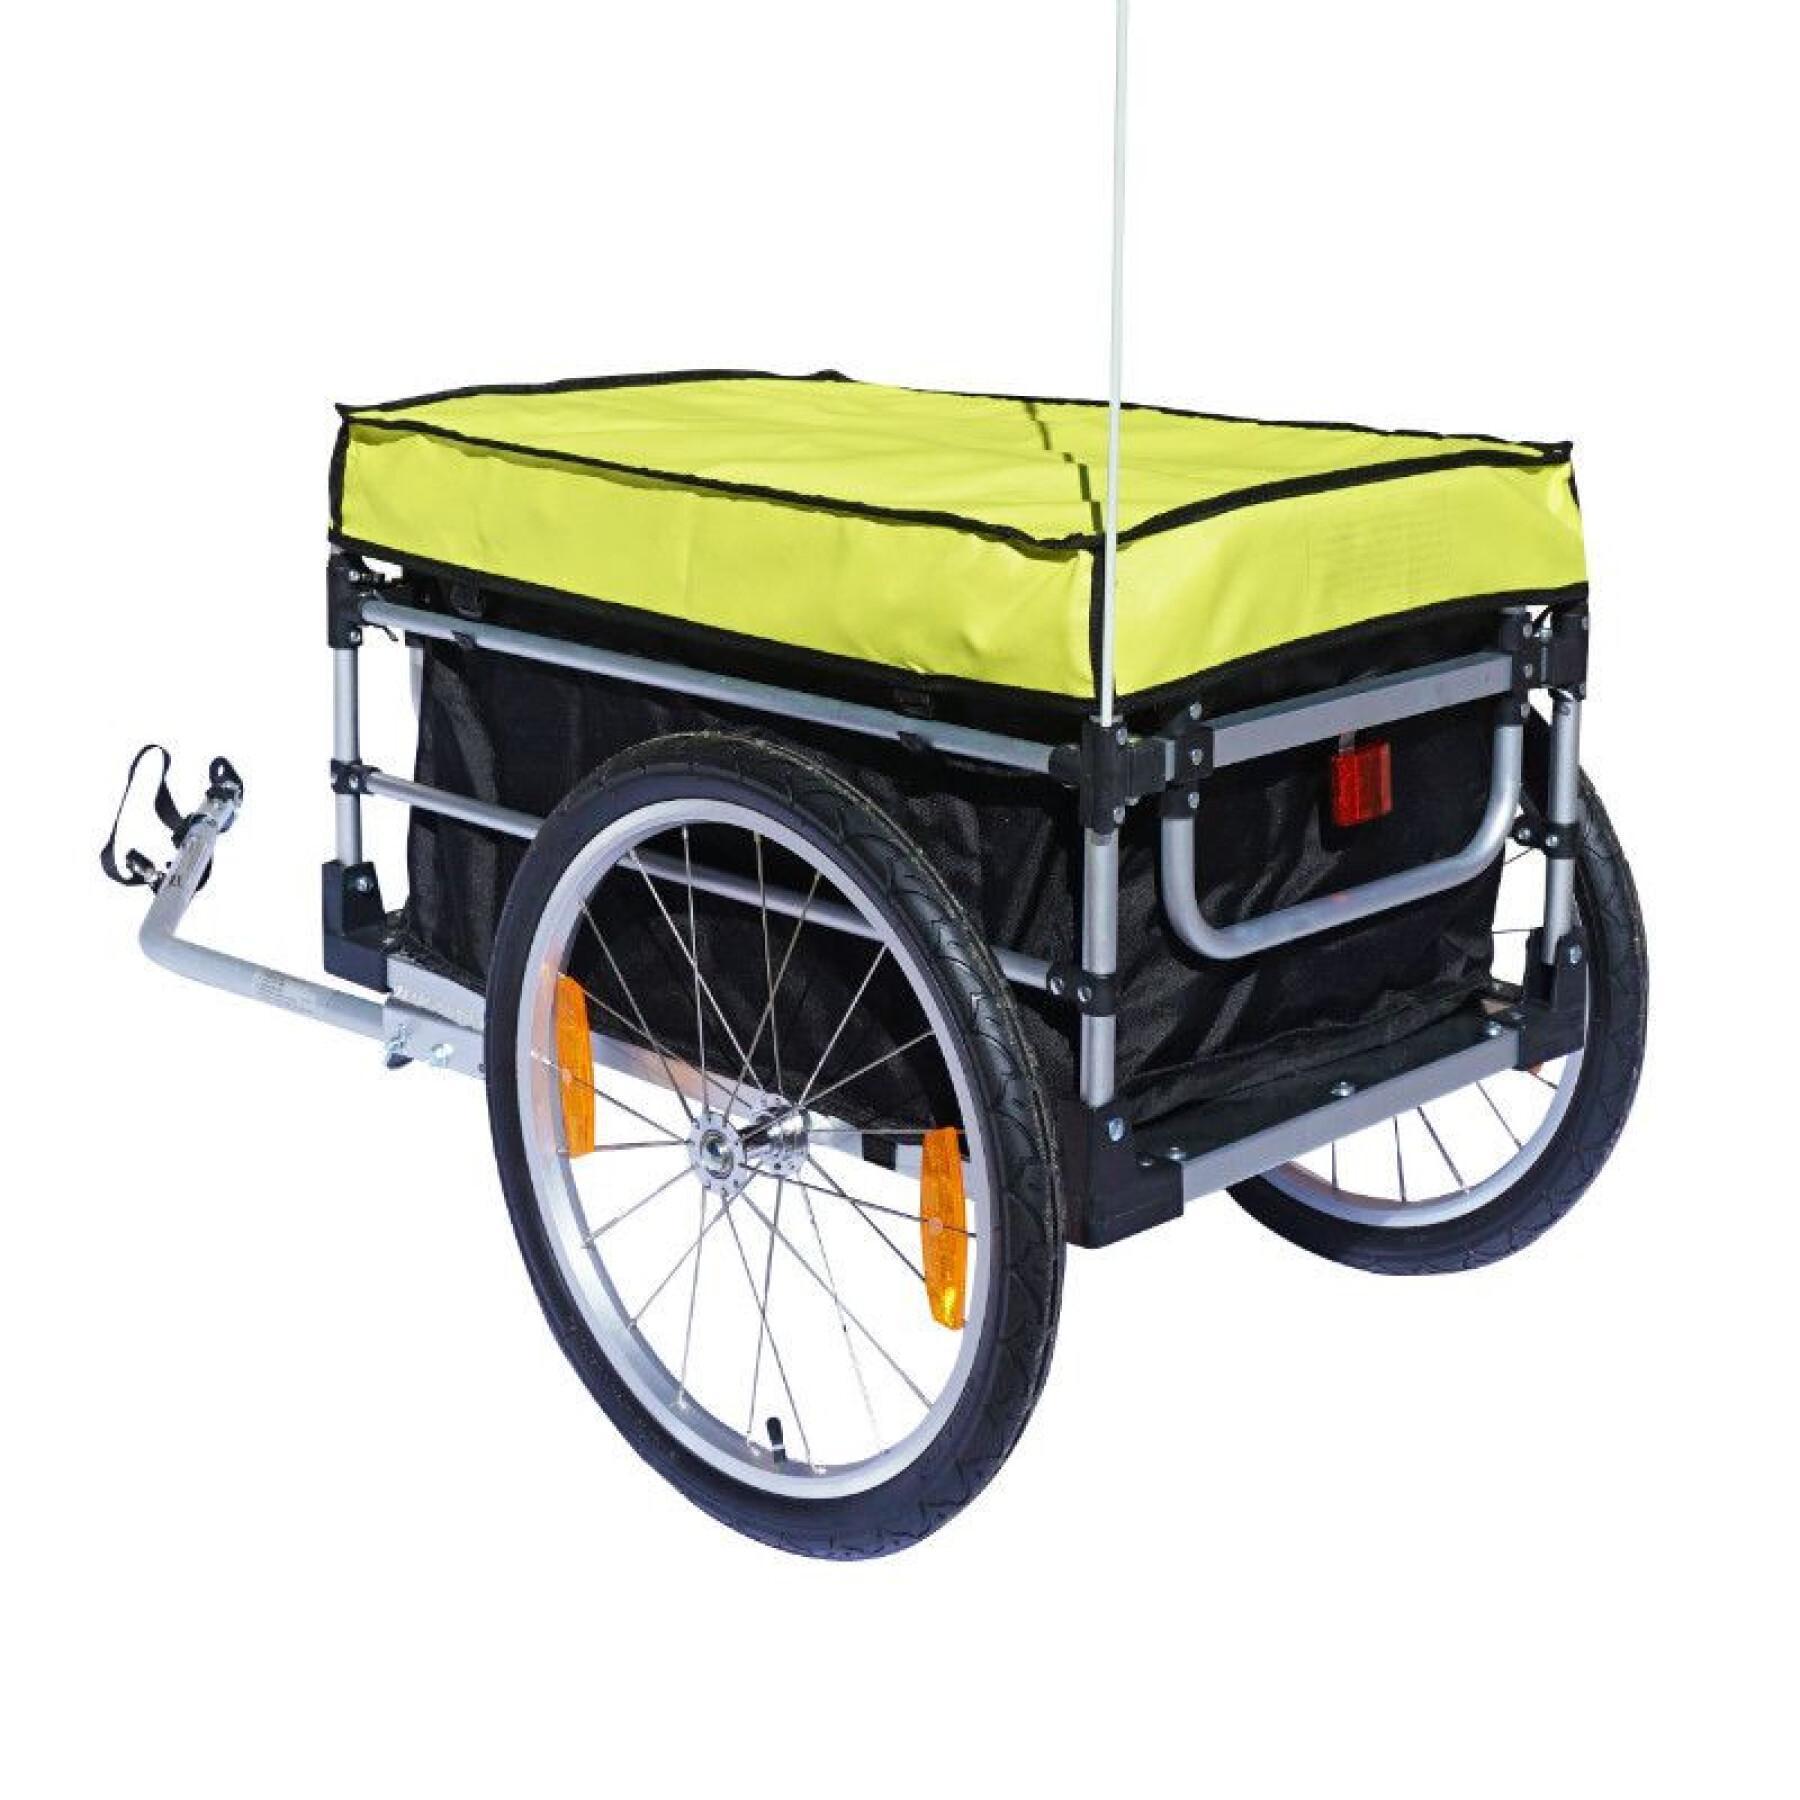 Utility-Fahrradanhänger mit Hüllen mit Rädern 20 ''Radachsenbefestigung - Montage rapide ohne Werkzeug P2R